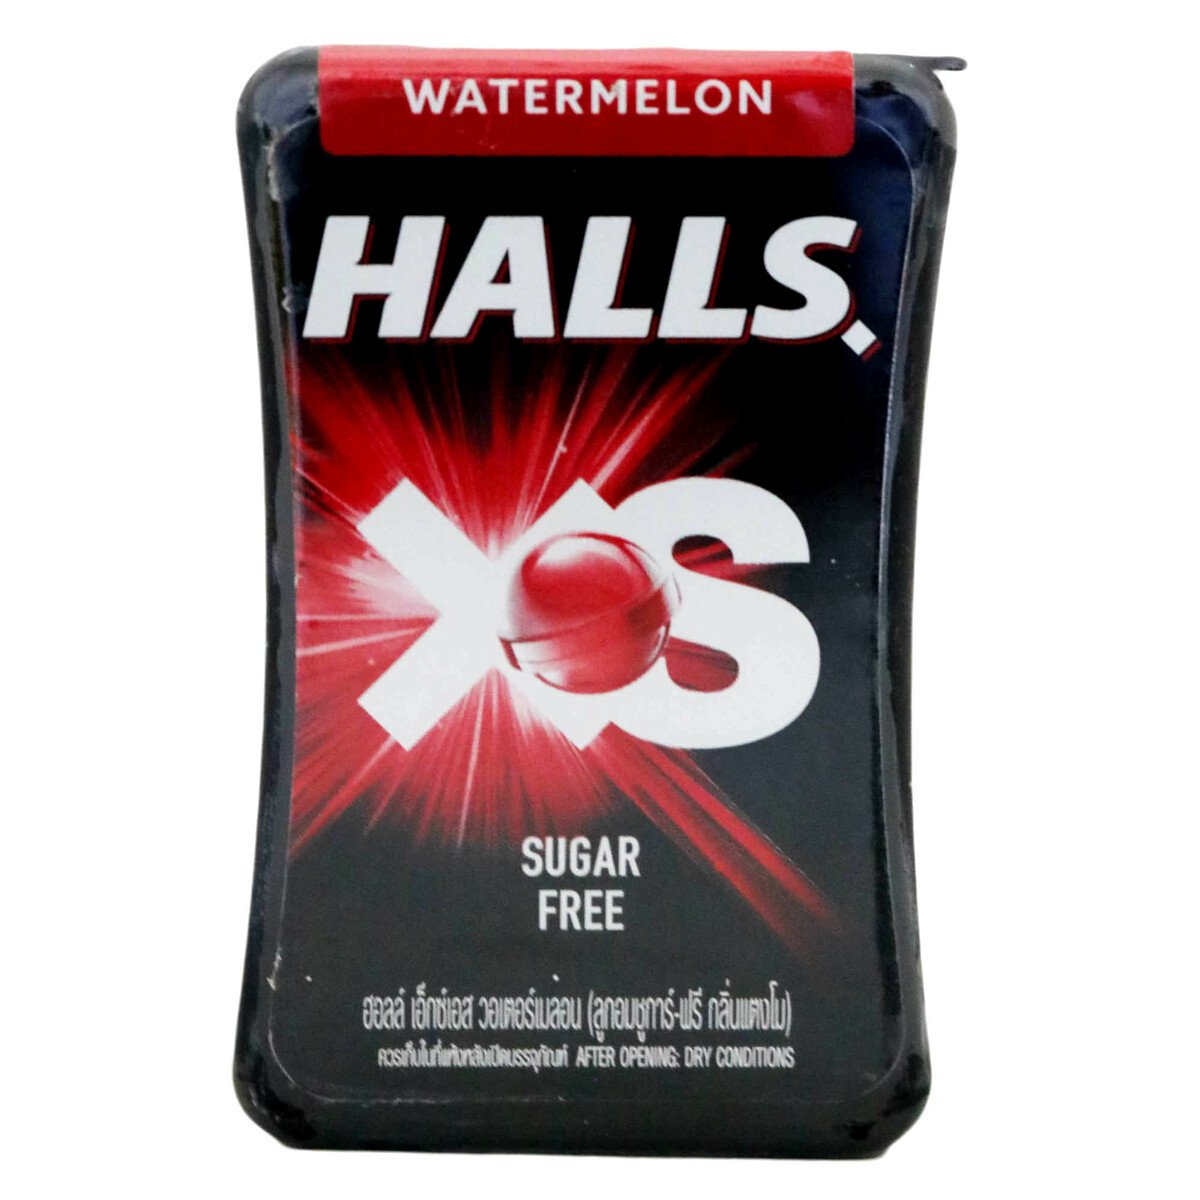 Halls XS Watermelon 23sticks